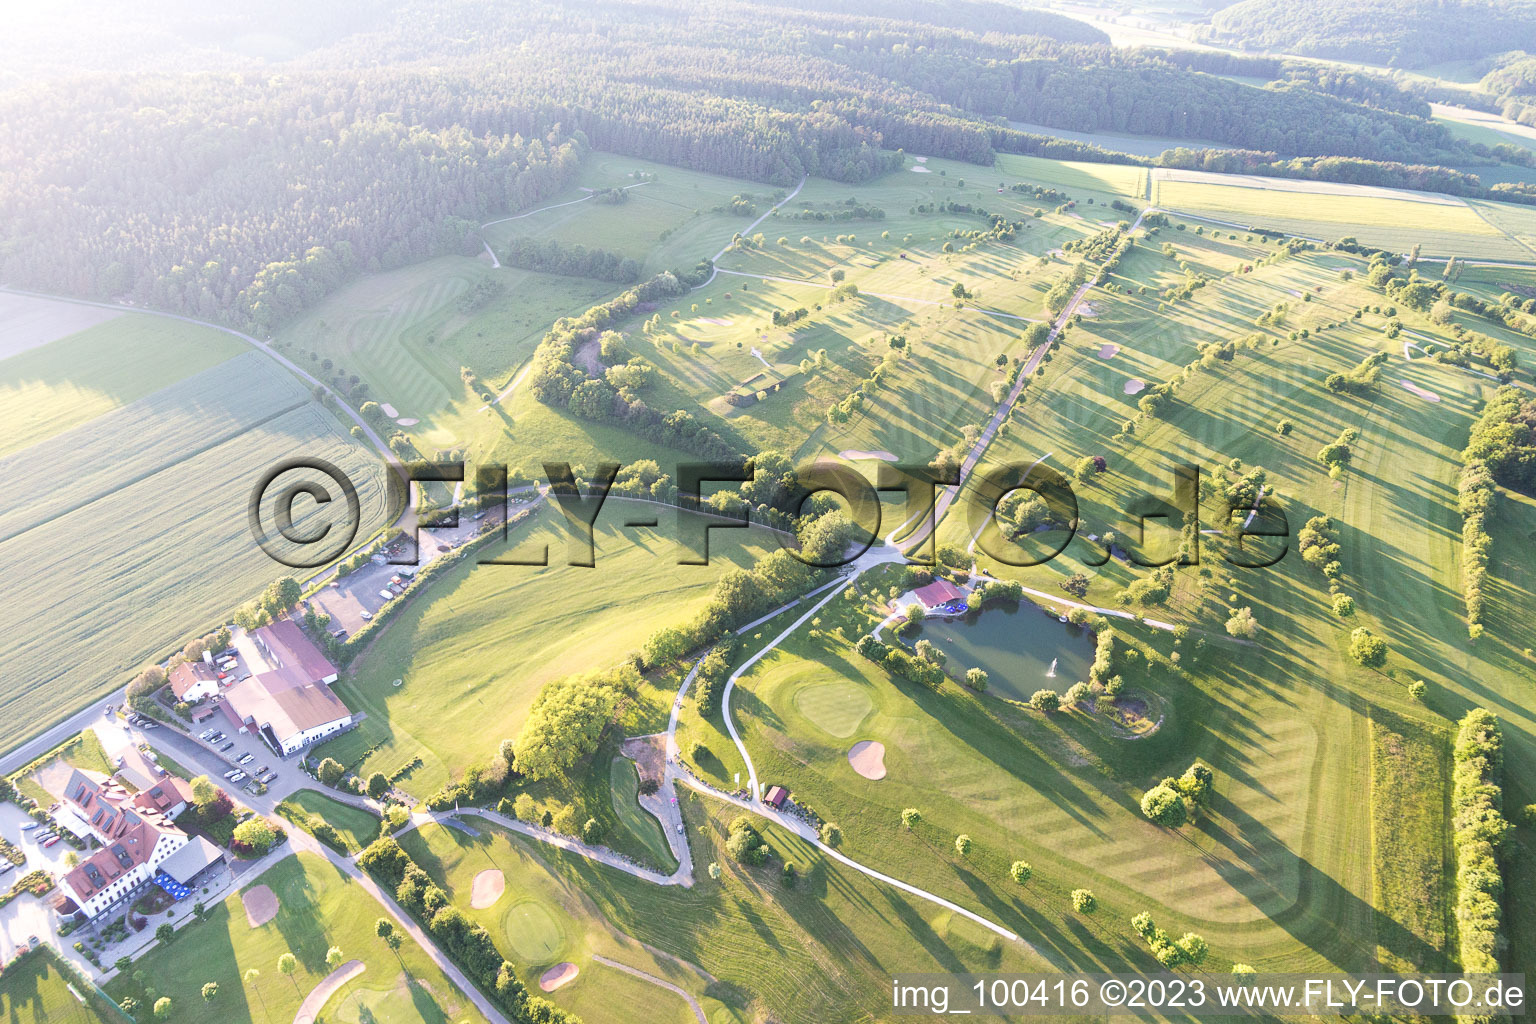 Schrägluftbild von Golfclub Steigerwald in Geiselwind im Bundesland Bayern, Deutschland